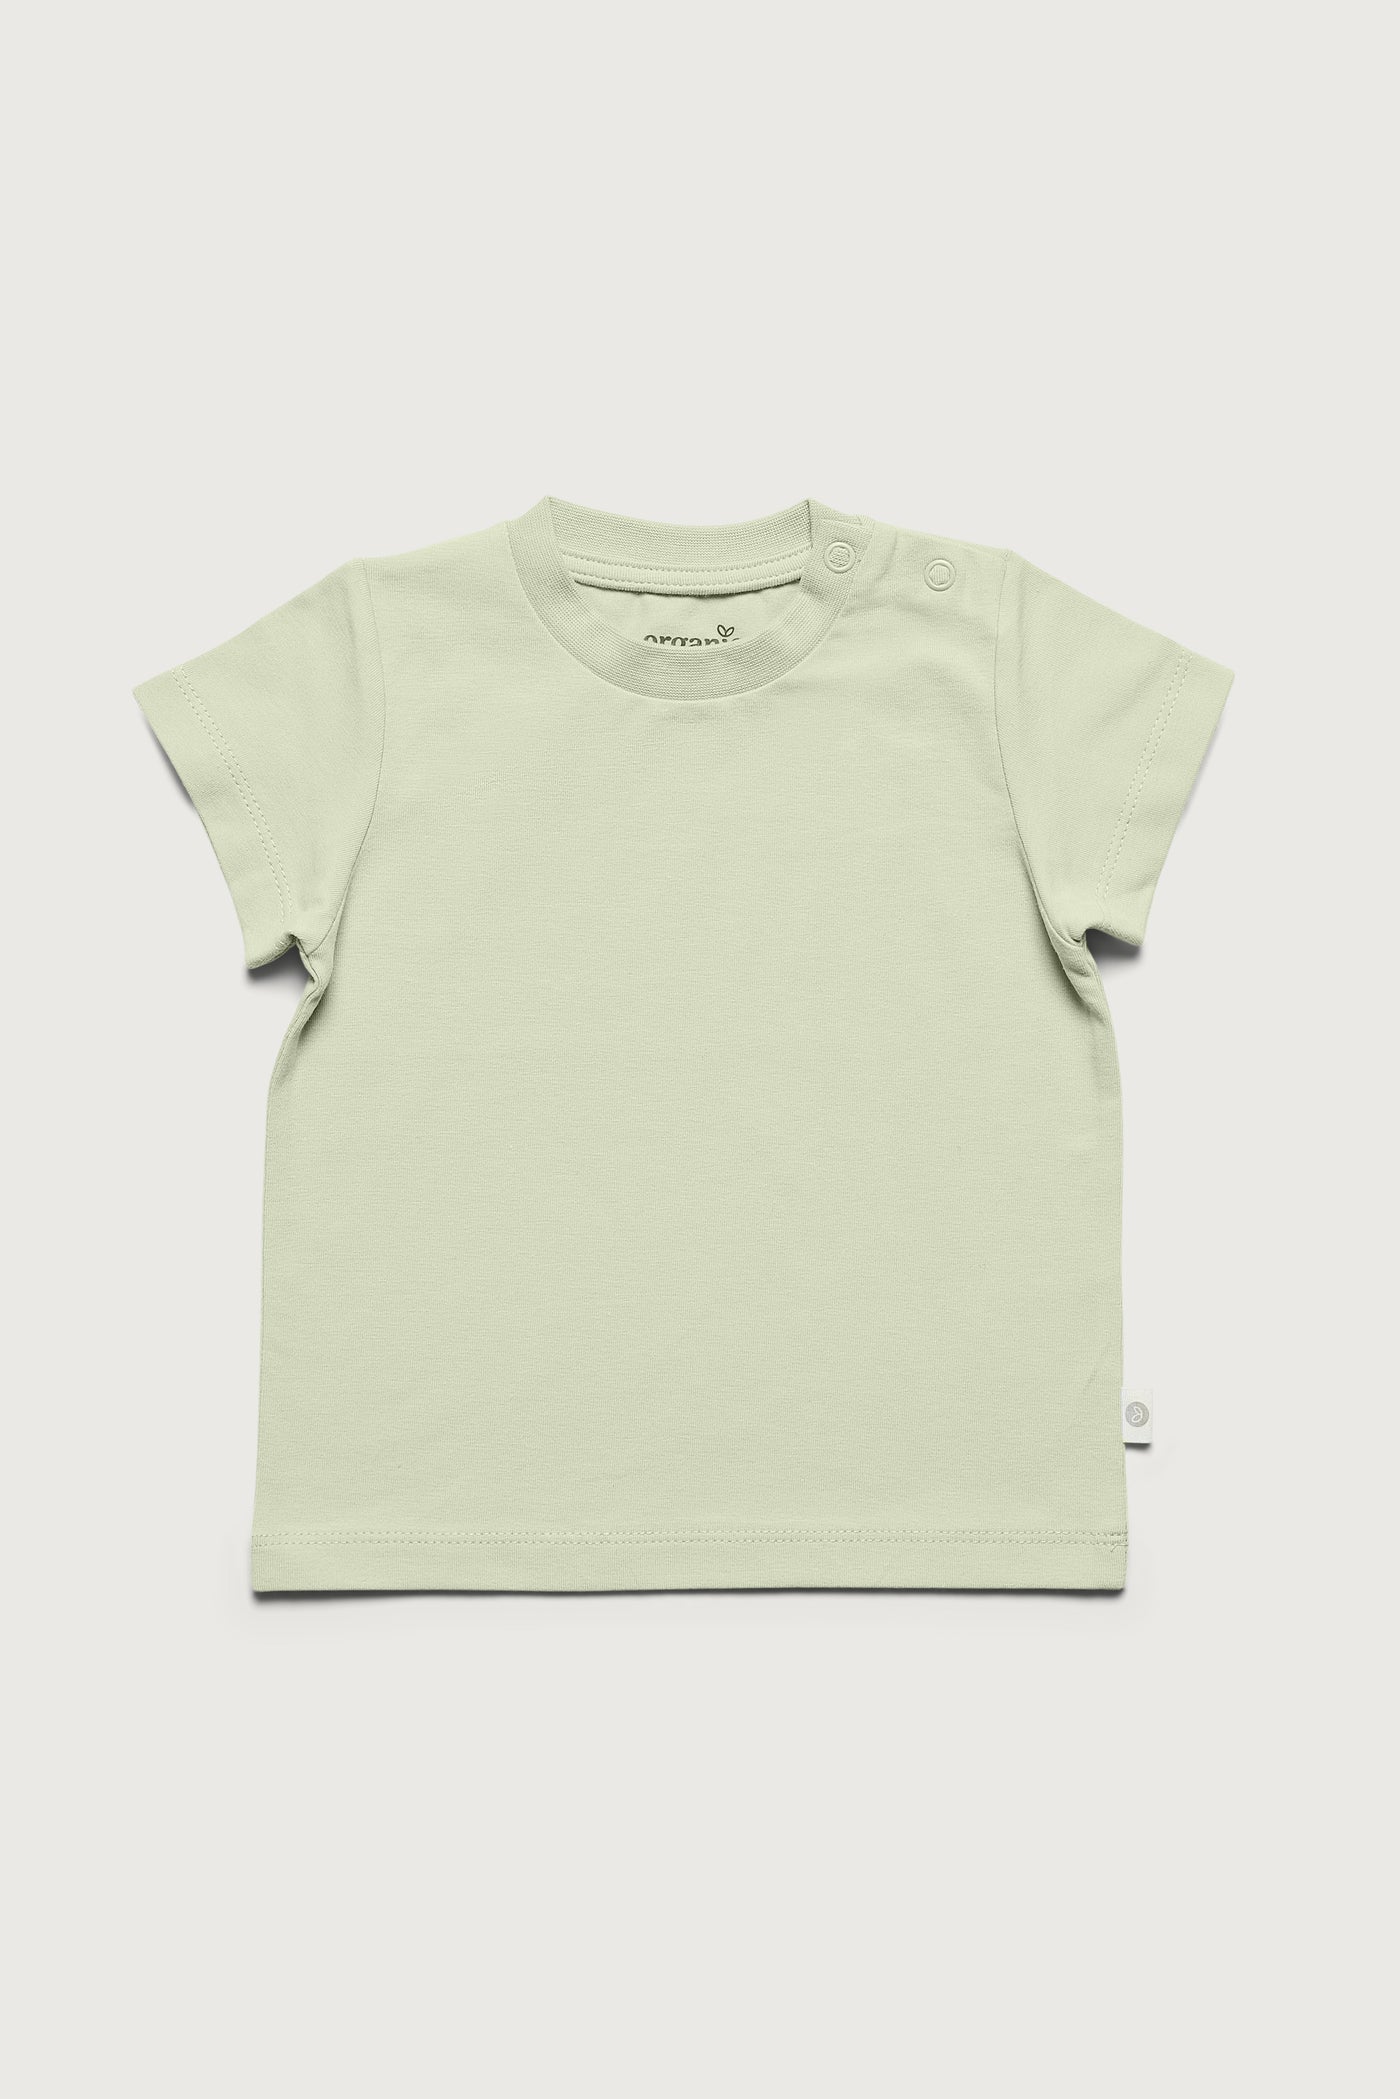 Grøn kortærmet super blød T-shirt med masser af stretch i GOTS-certificeret økologisk bomuld fra Organic Lullaby.